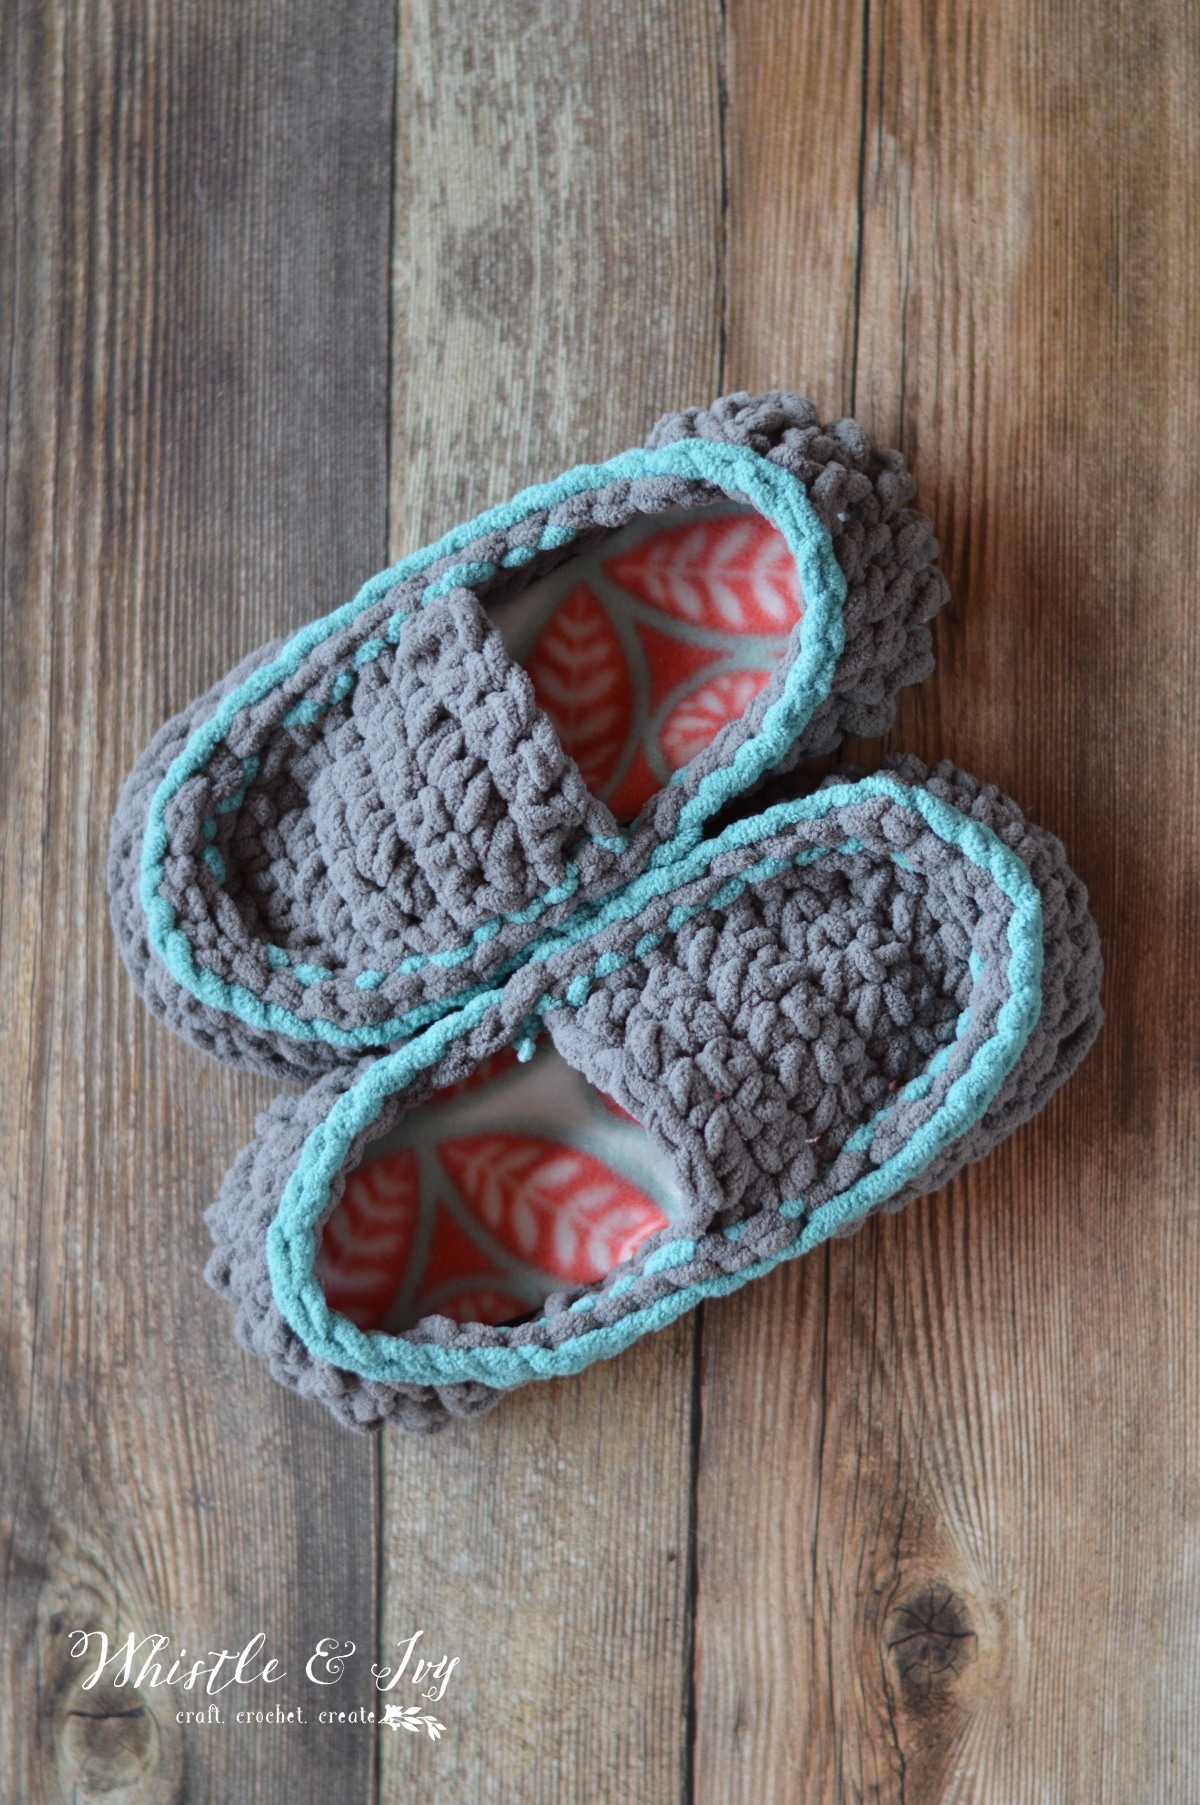 Super Chunky Crochet Slippers – Crochet Pattern